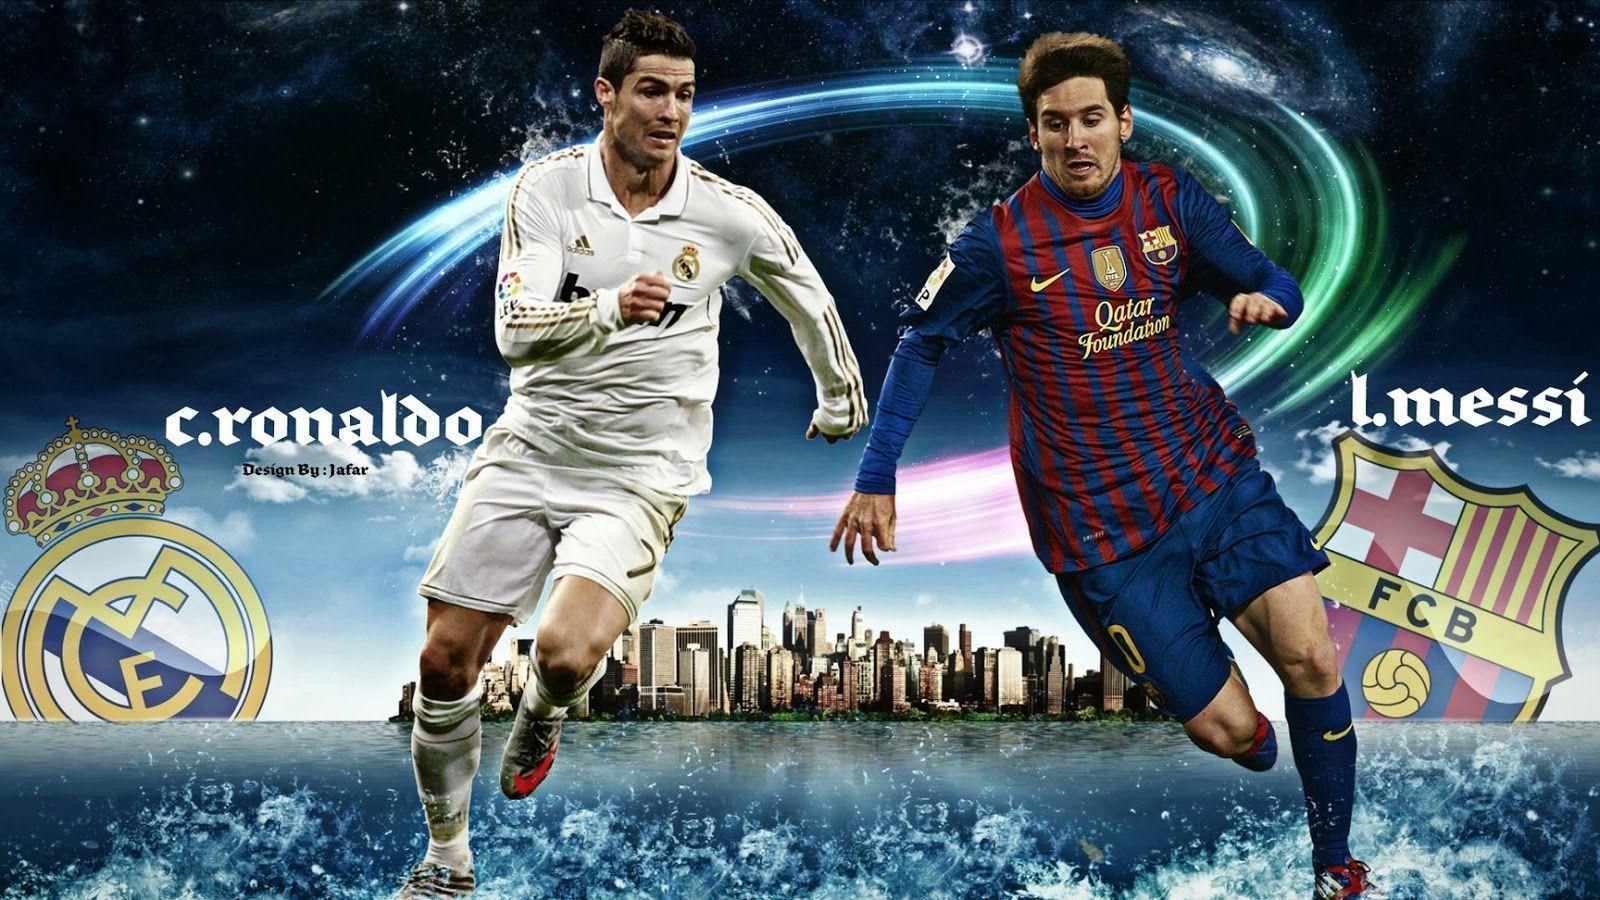 Messi và Ronaldo: Cùng xem lại những pha bóng siêu đẳng của Lionel Messi và Cristiano Ronaldo, hai siêu sao bóng đá hàng đầu thế giới, để tận hưởng những khoảnh khắc tuyệt vời và những cú sút không thể tin được.